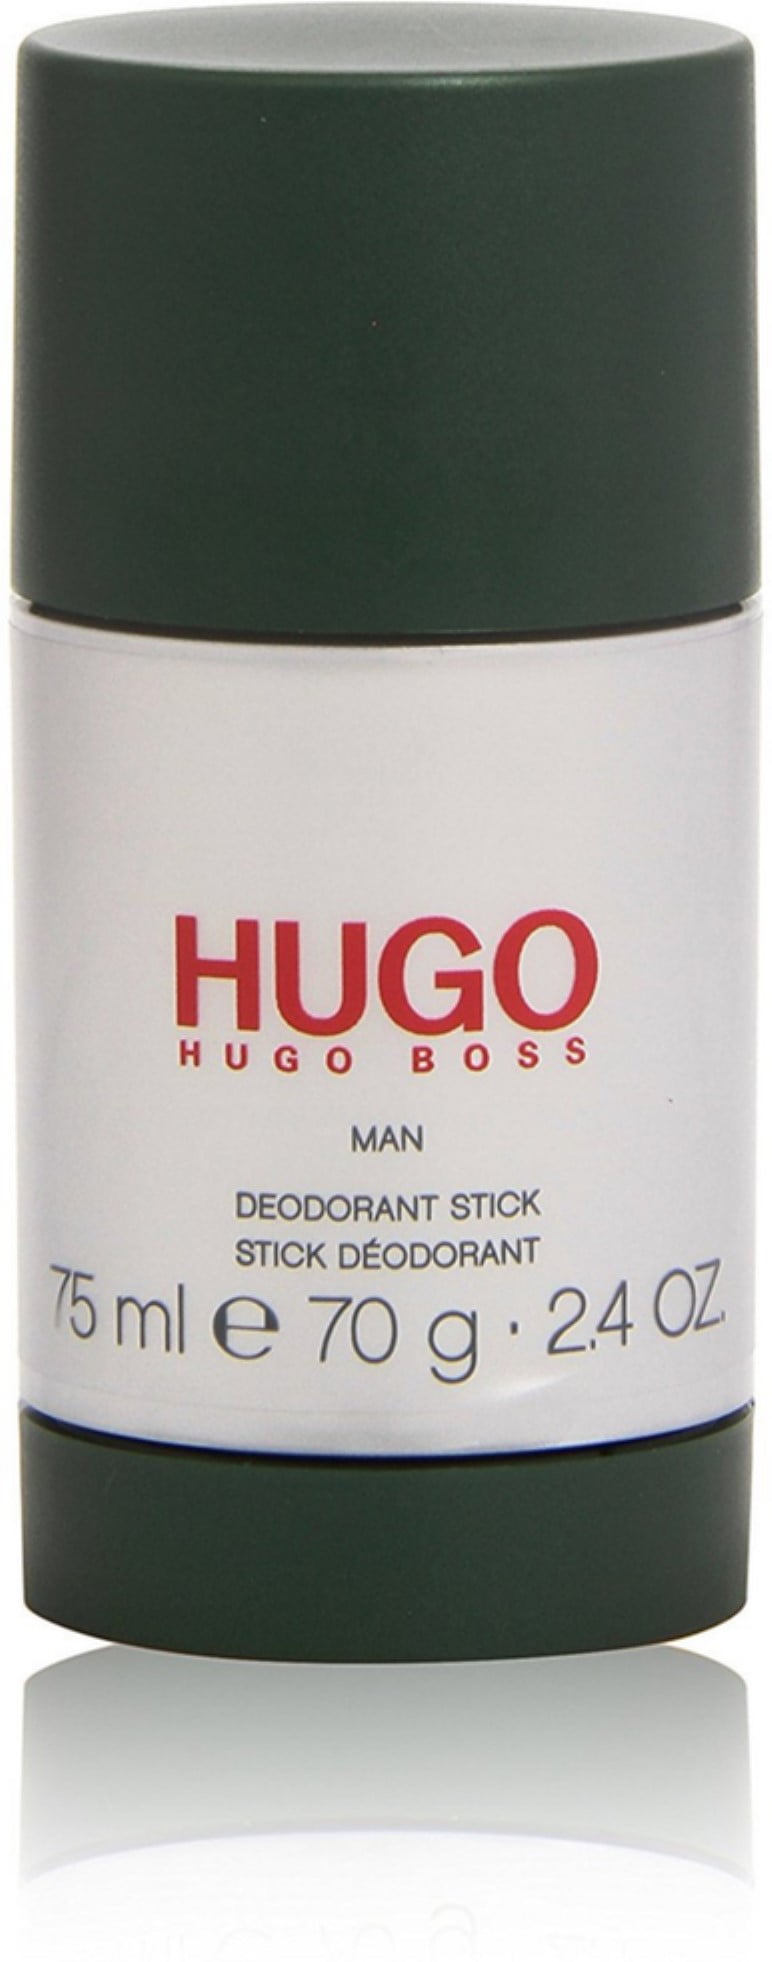 hugo deostick